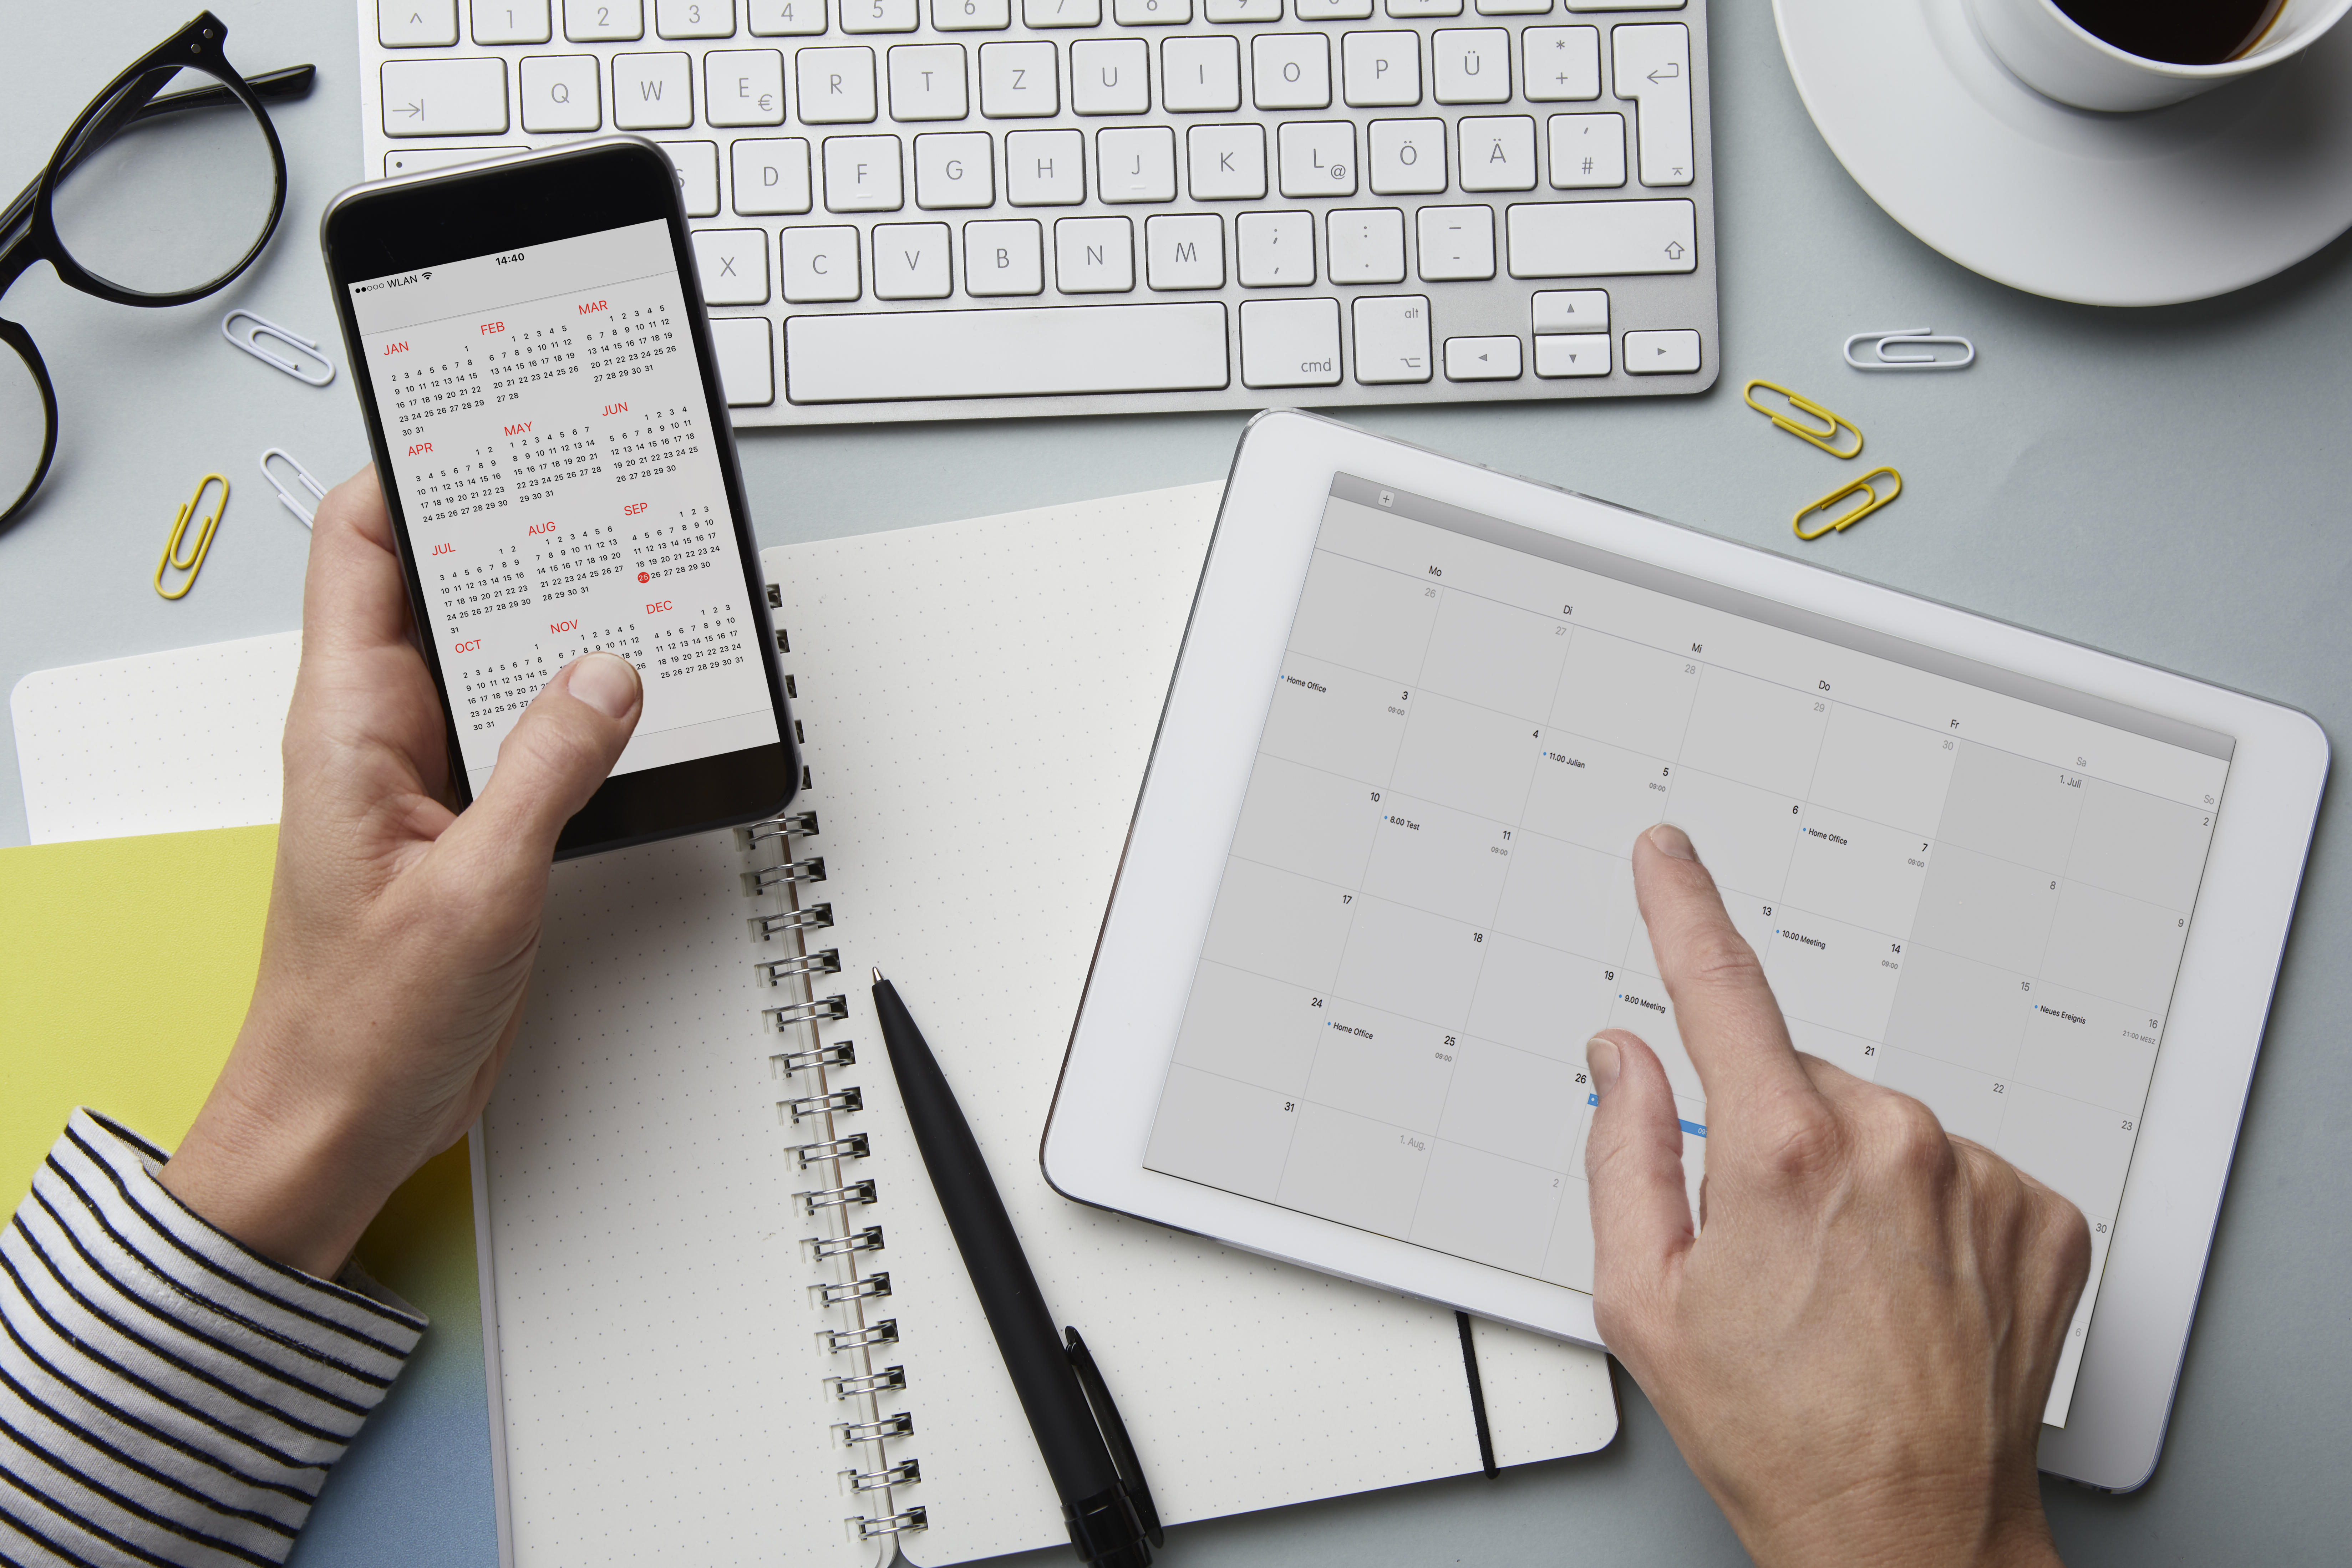 Une personne avec un smartphone et une tablette en train de programmer sa journée | Source : Getty Images